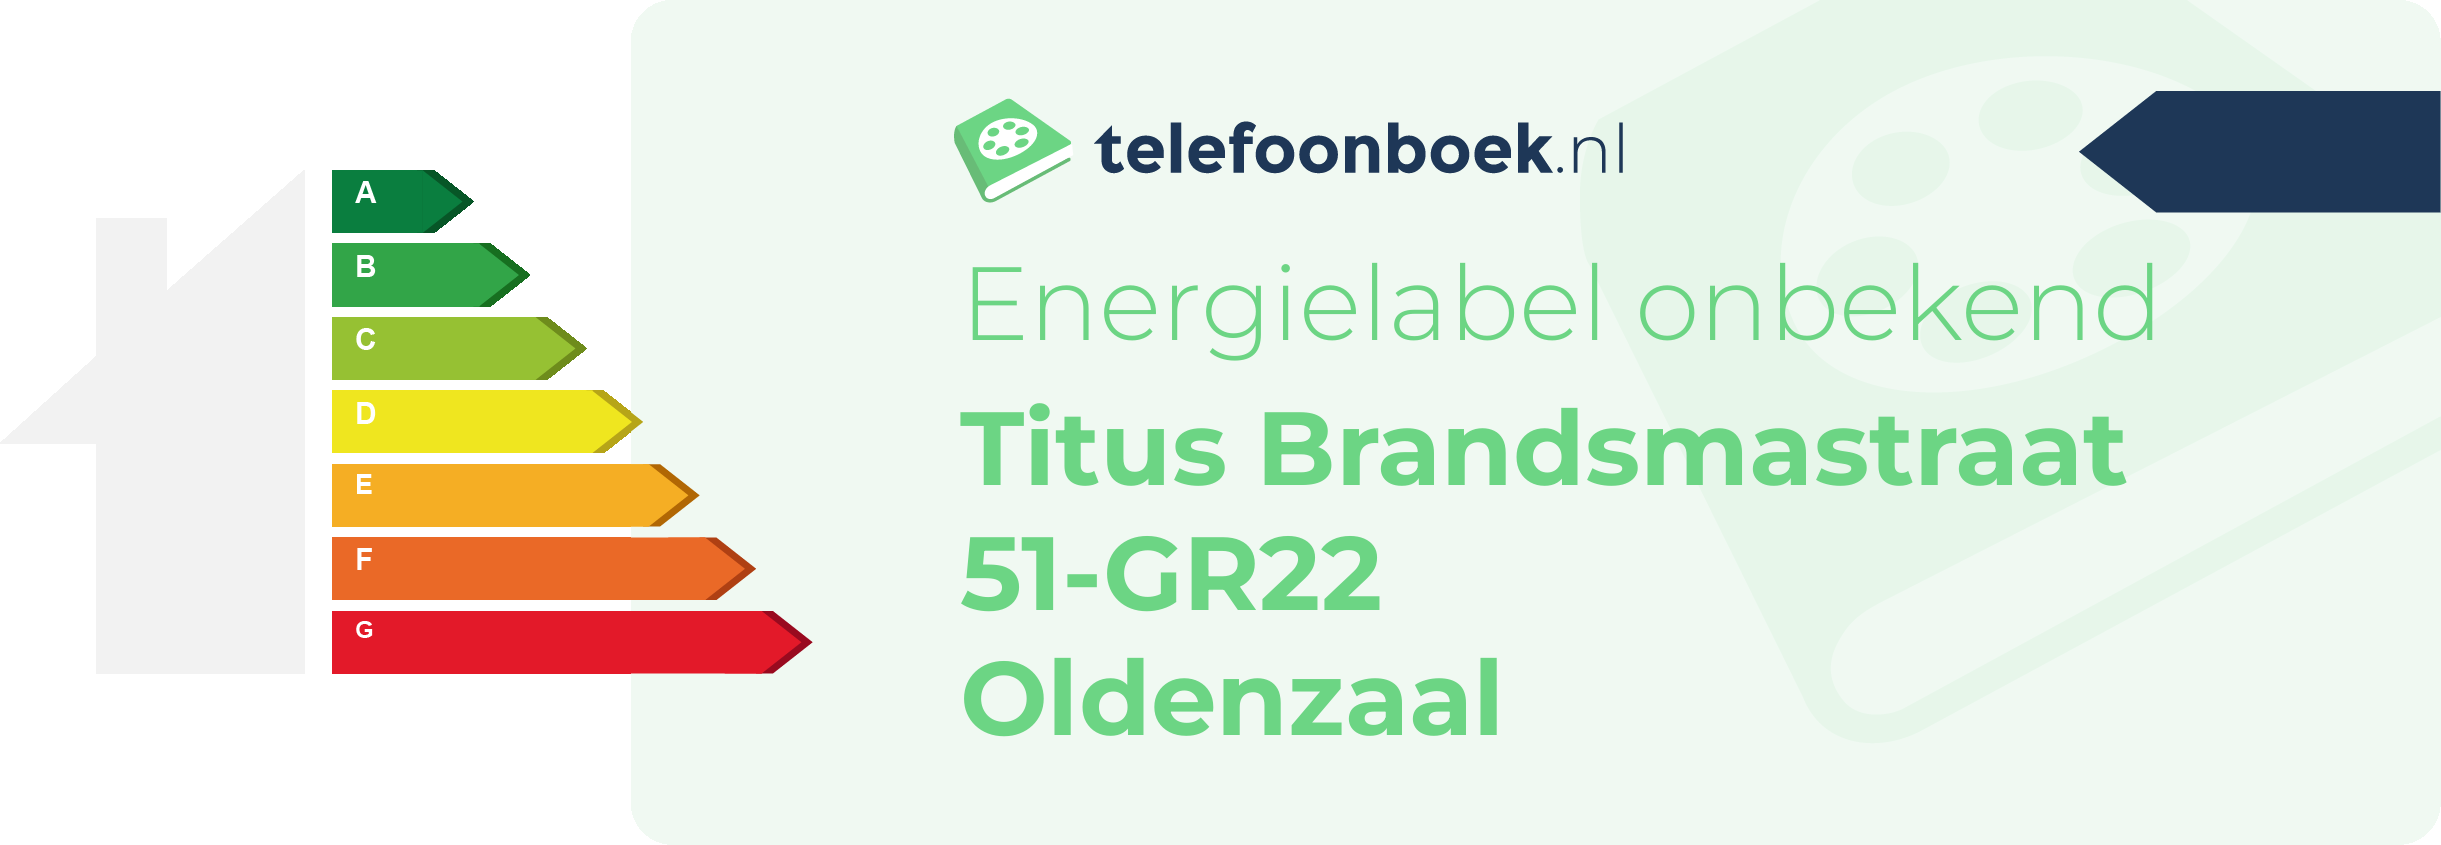 Energielabel Titus Brandsmastraat 51-GR22 Oldenzaal